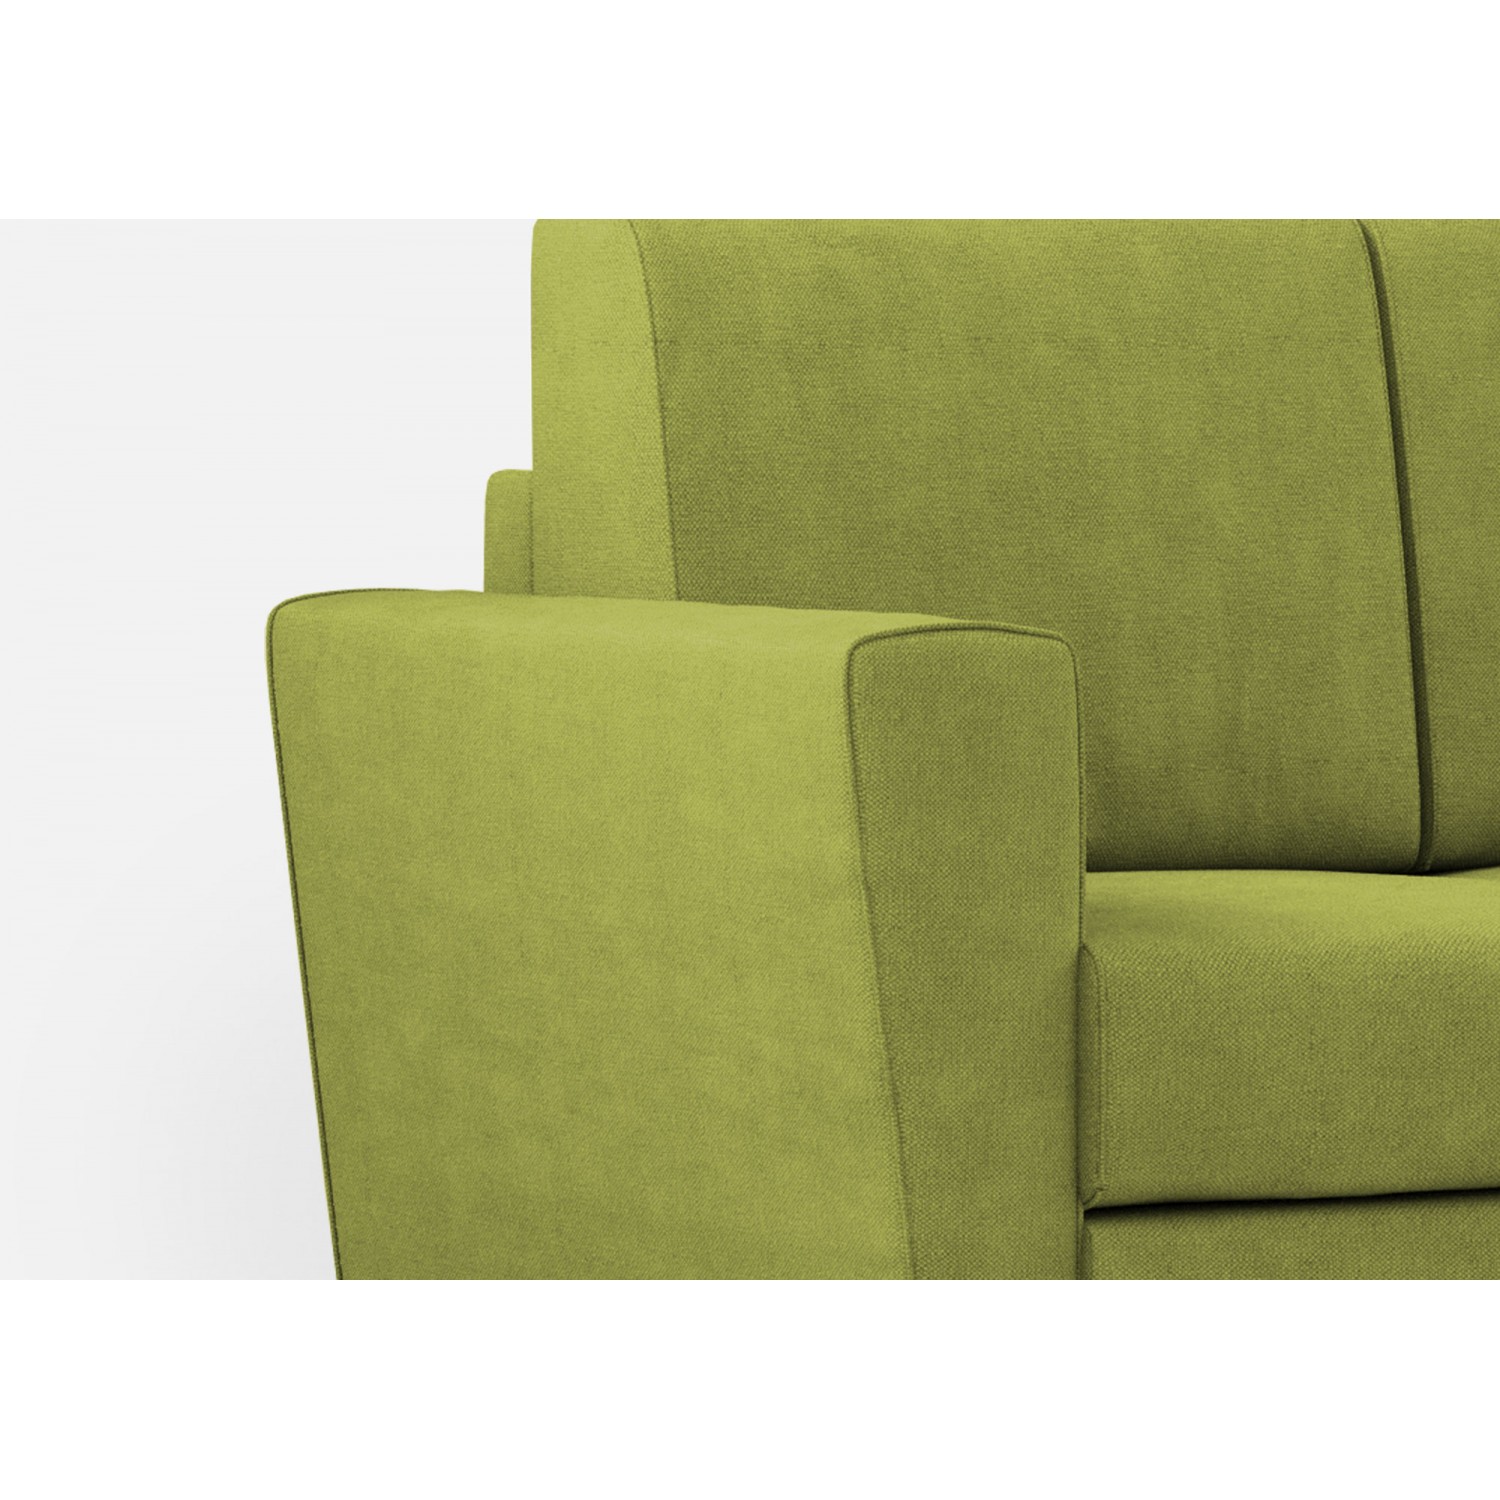 Ityhome Divano Yasel 2 posti (due sedute da 60cm) + pouf misure esterne L.152 P.155 colore verde